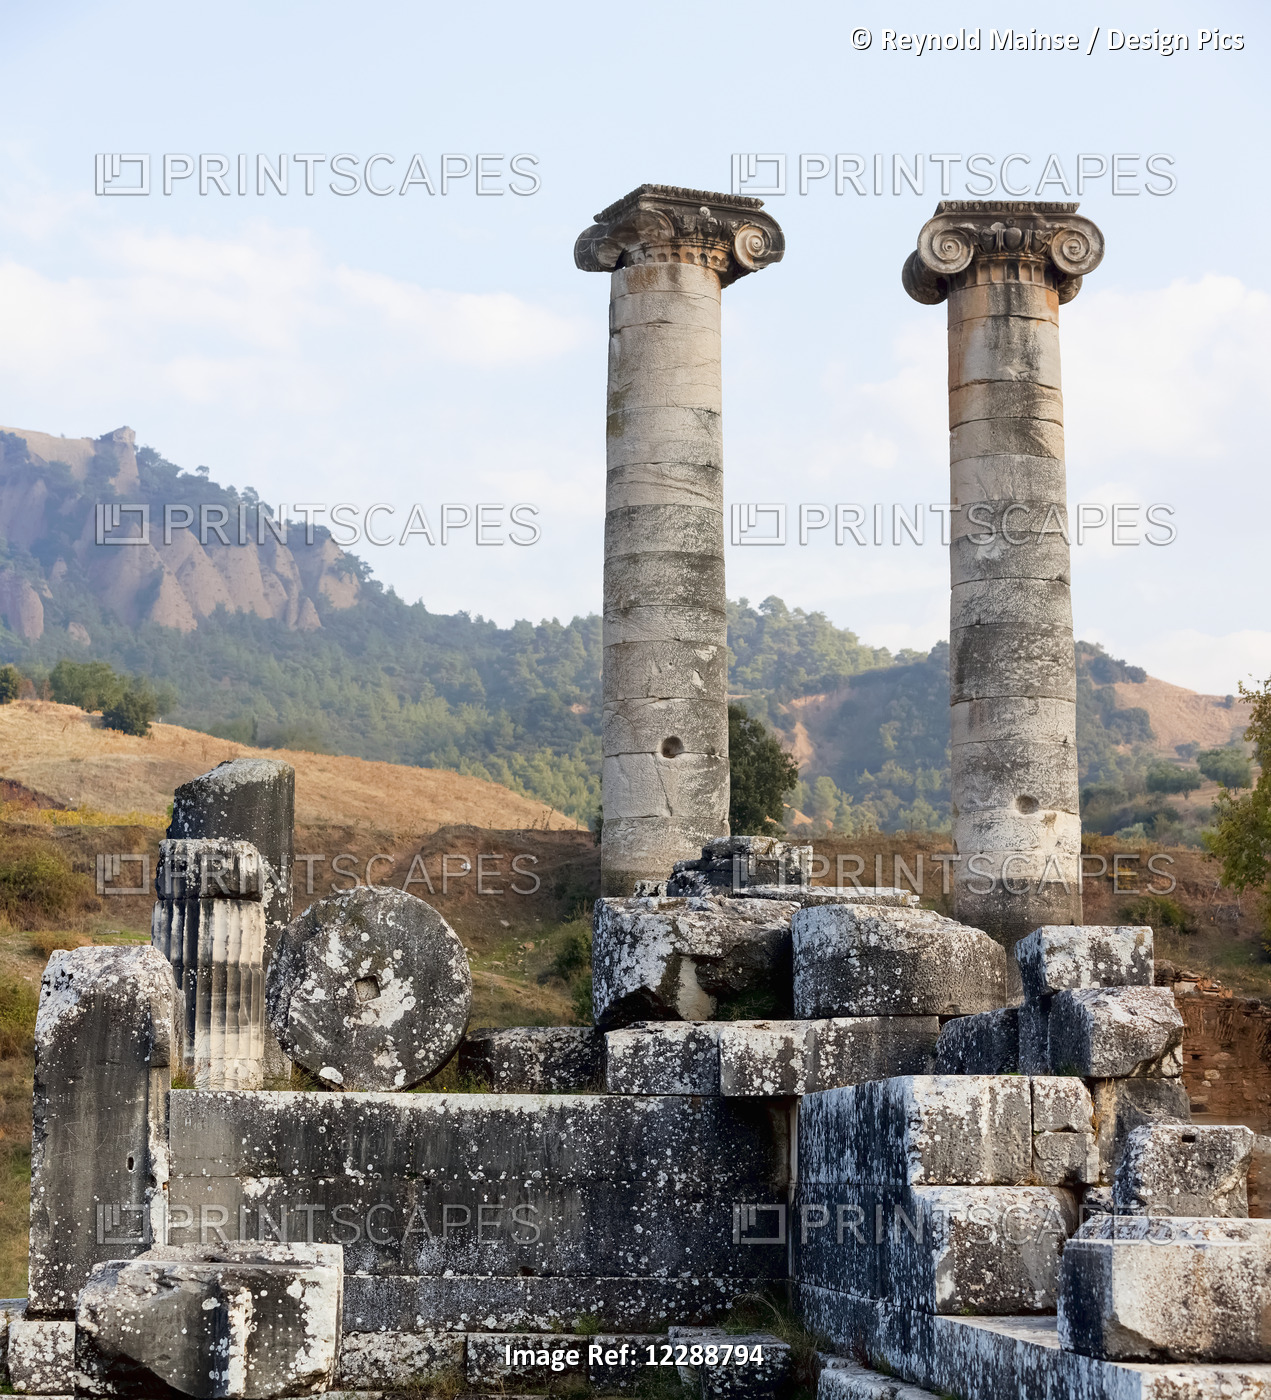 Ruins Of The Temple Of Artemis; Sardis, Turkey